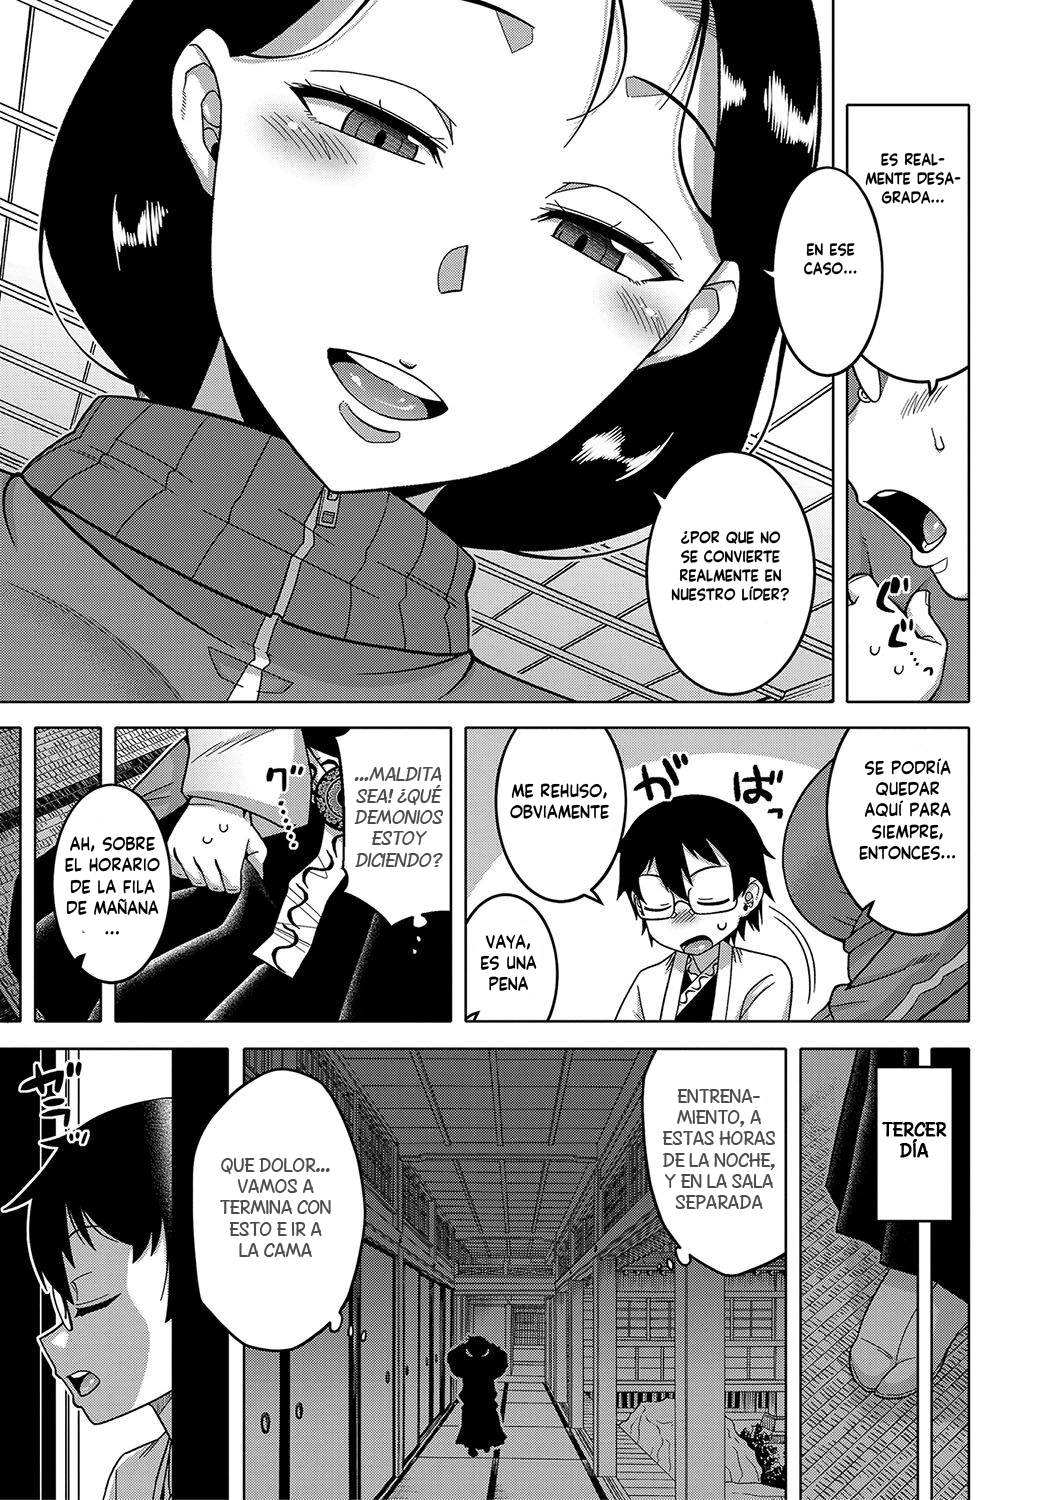 Manga KAMI-SAMA NO TSUKURIKATA-THE MAKING OF A CULT LEADER Chapter 1 image number 14